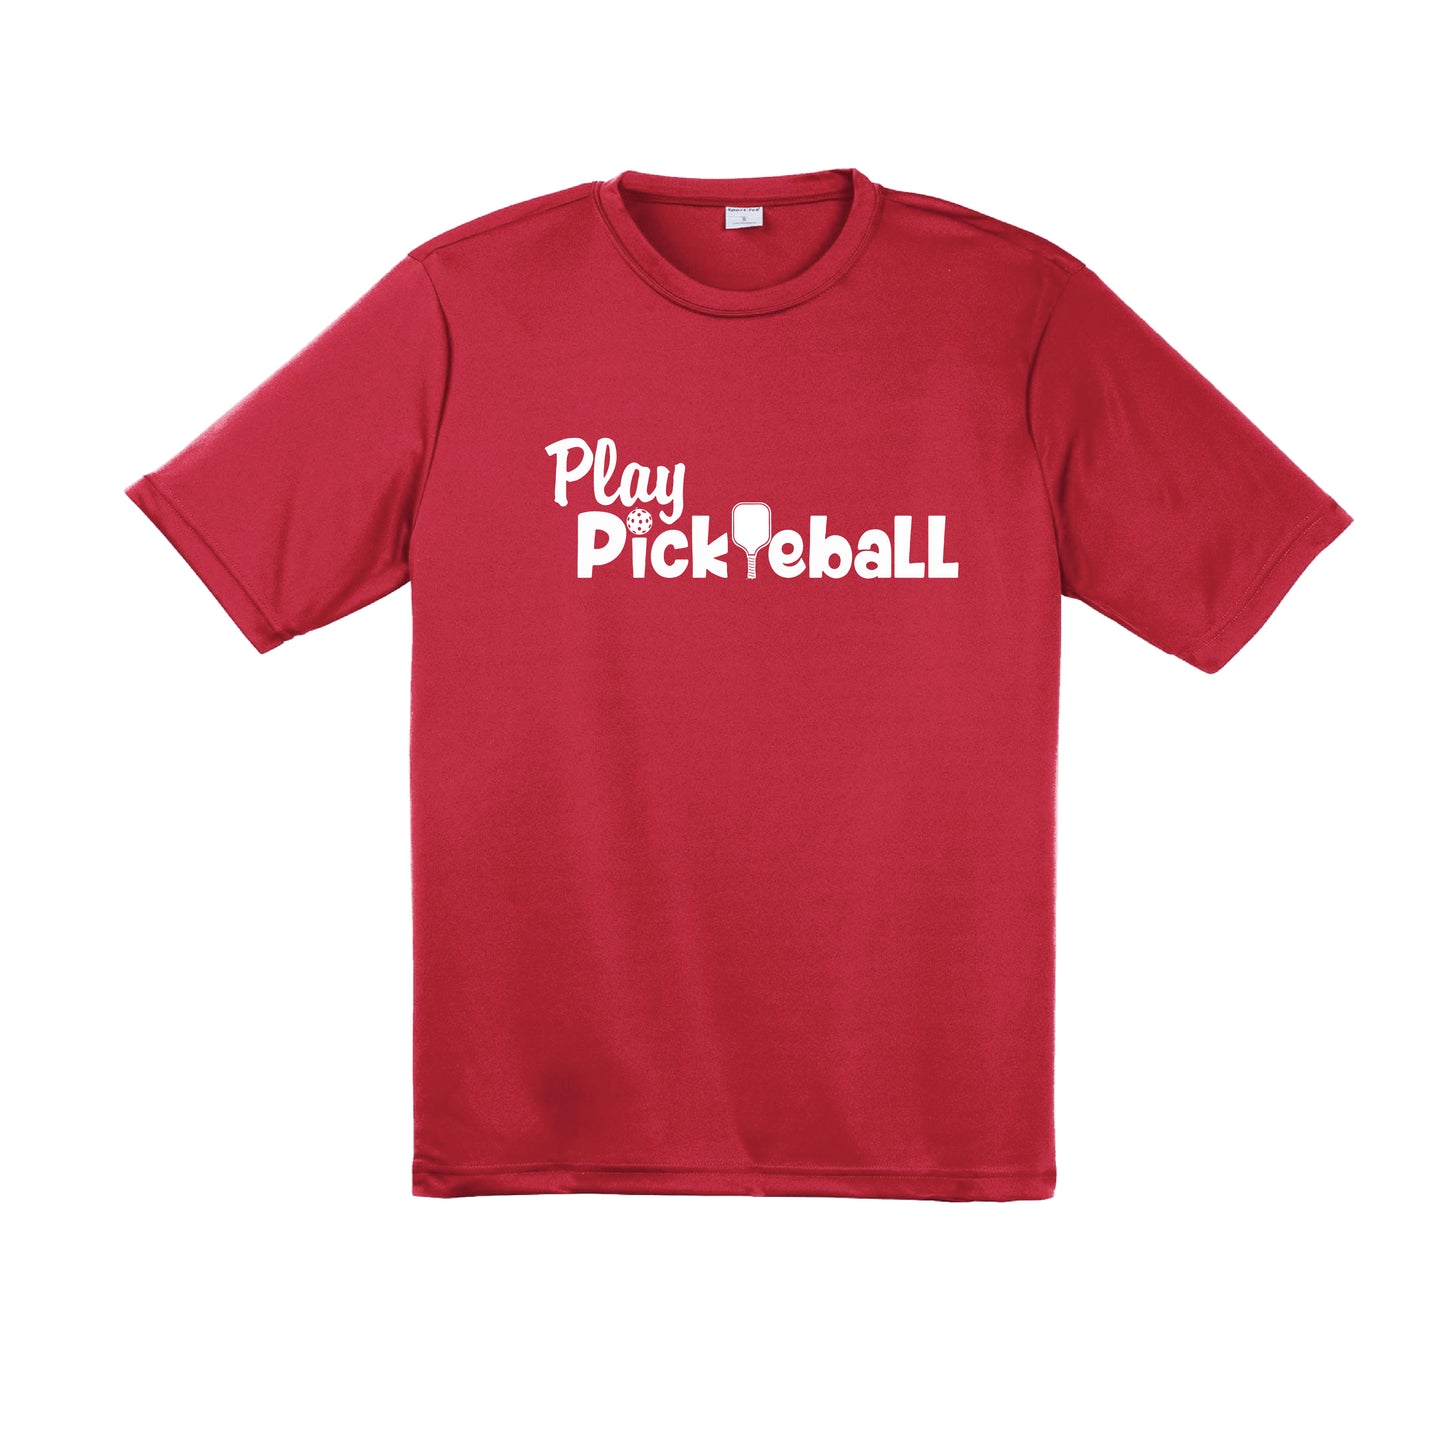 Play Pickleball | Men's Short Sleeve Pickleball Shirt | 100% Polyester